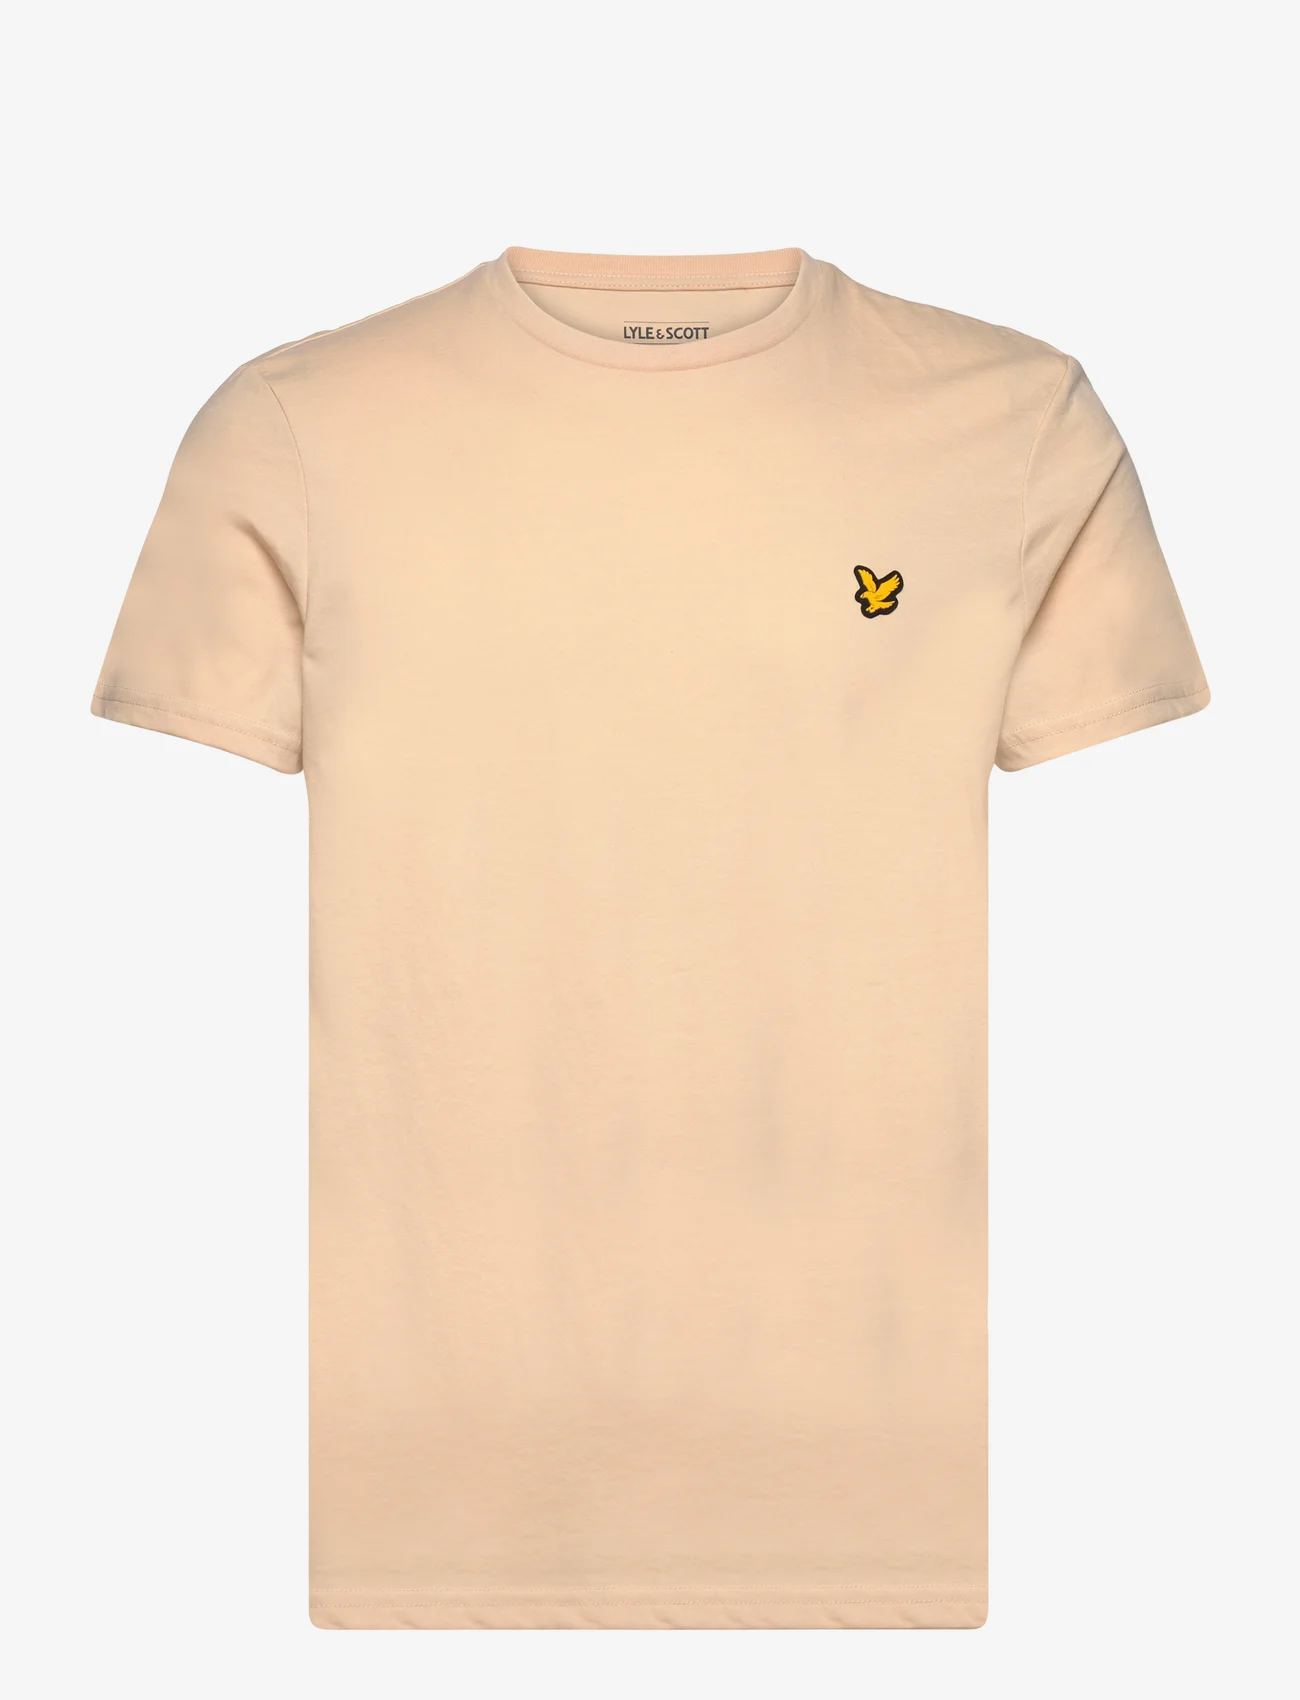 Lyle & Scott Sport - Martin SS T-Shirt - short-sleeved t-shirts - x183 sand dune - 0